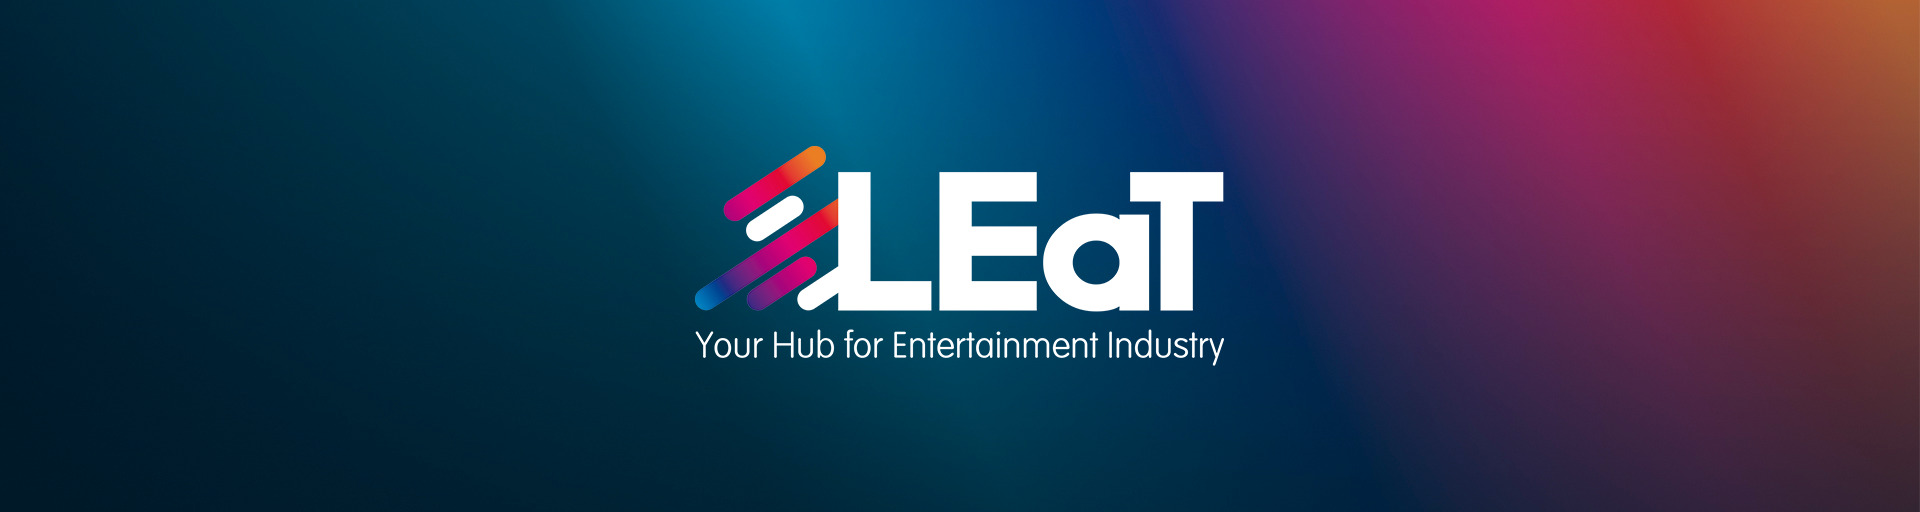 LEaT-Logo-Background